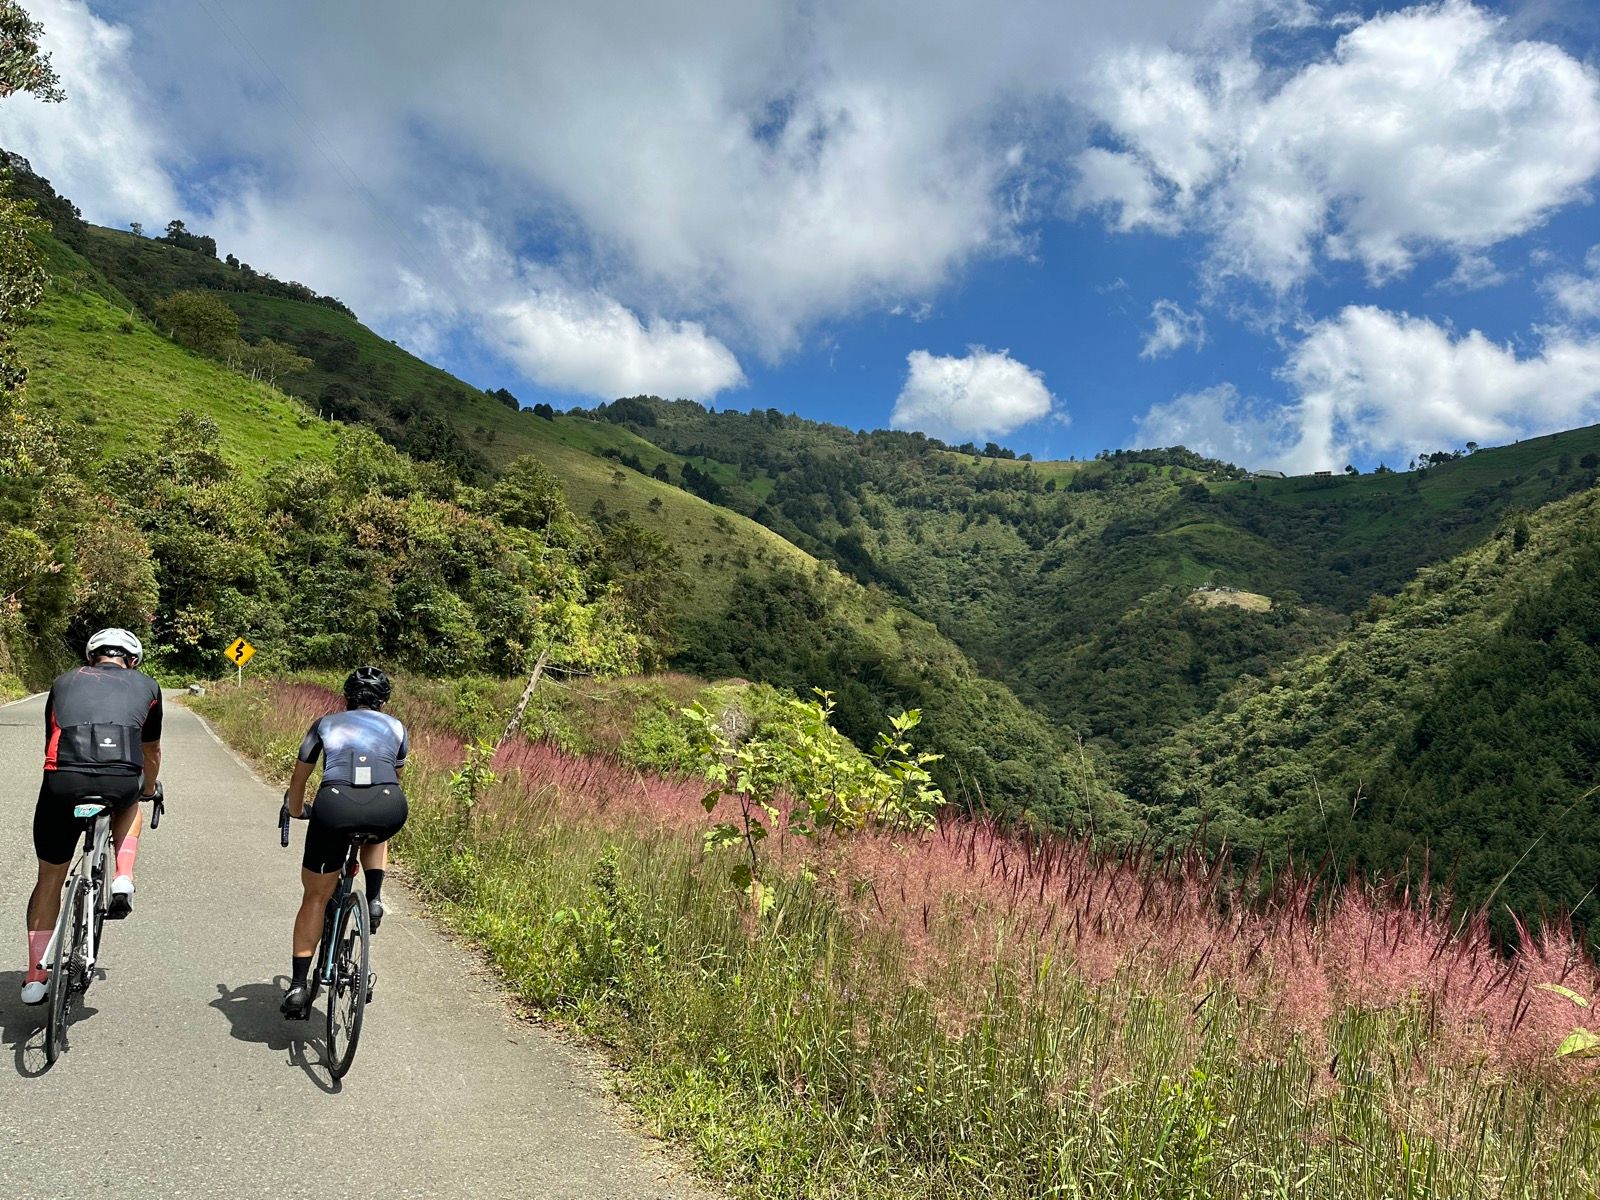 Riding the Rutas: Biking Through Colombia’s Diverse Terrain